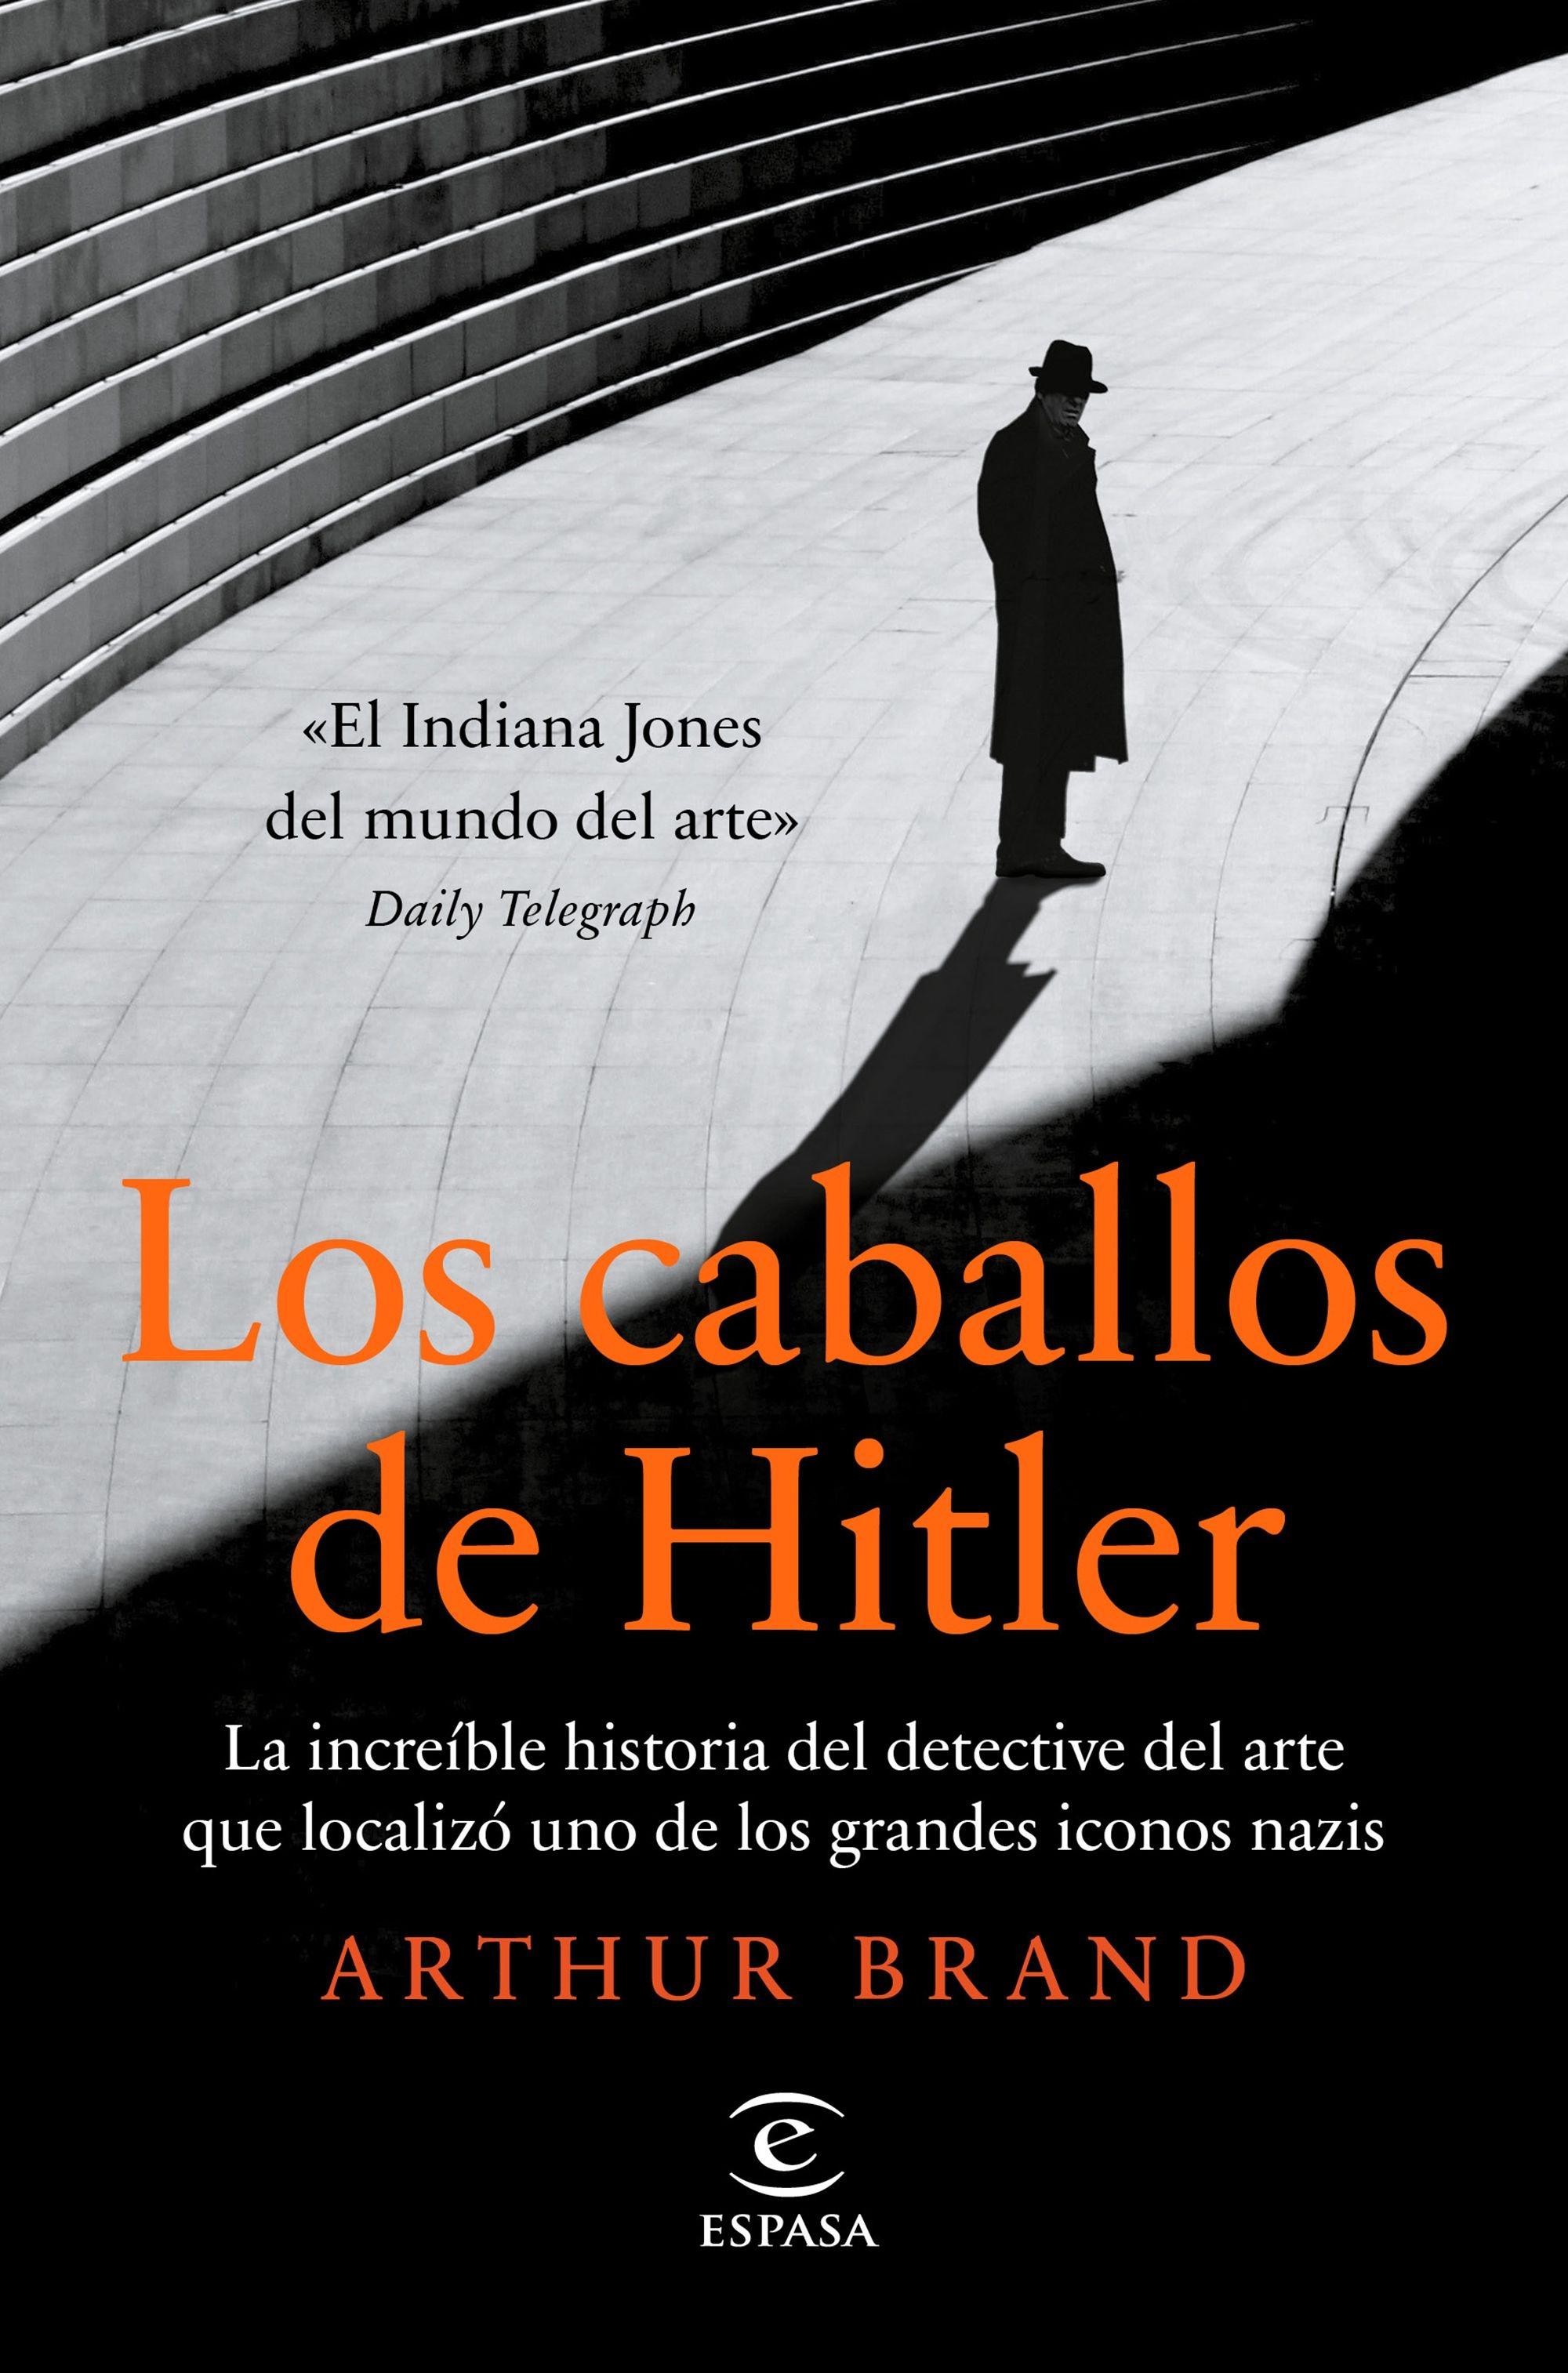 Caballos de Hitler, Los "La increíble historia del detective del arte que localizó uno de los gra"